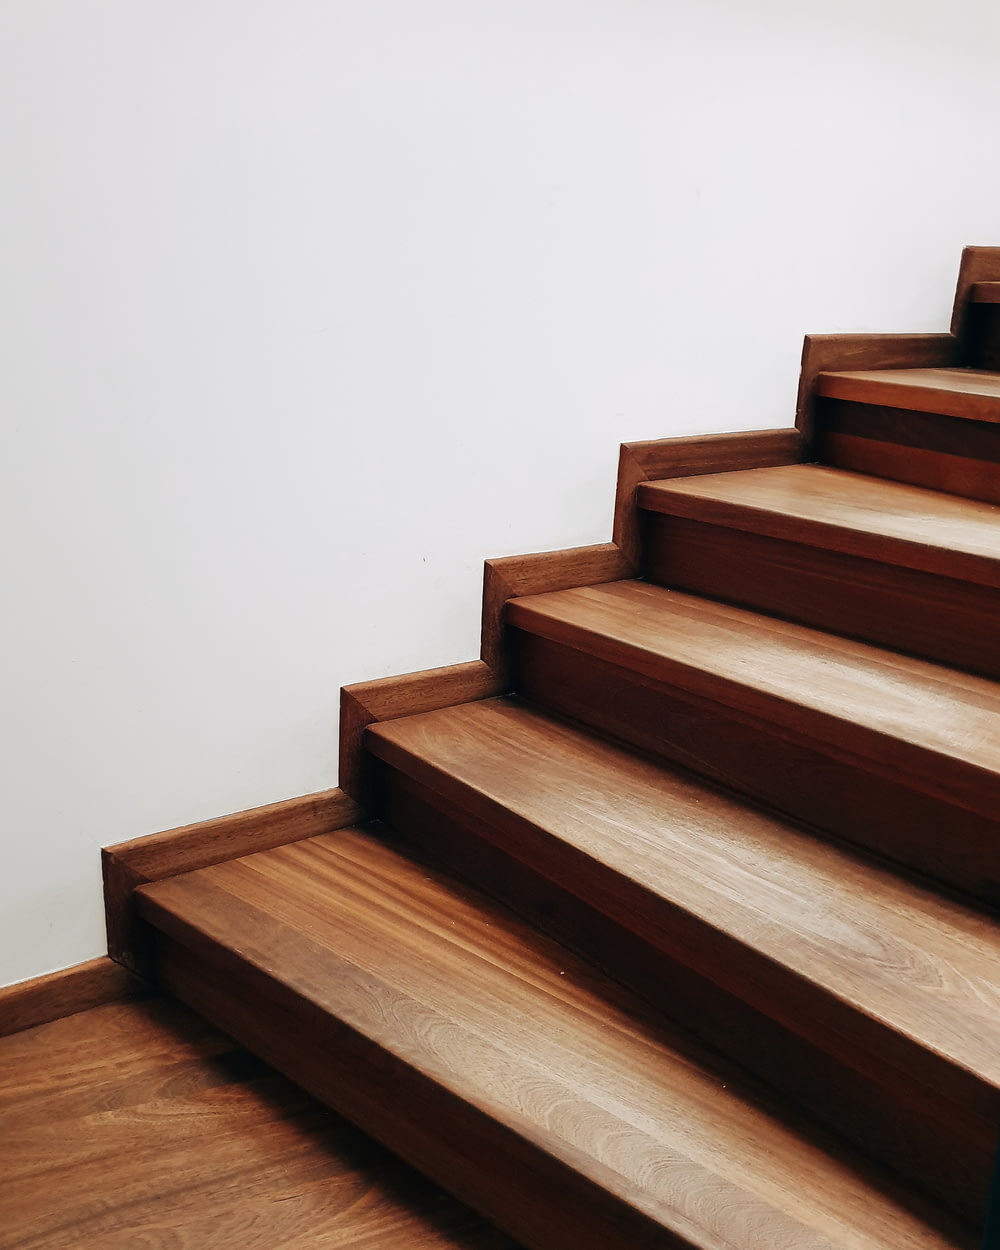 Escalier en bois brun près du mur blanc